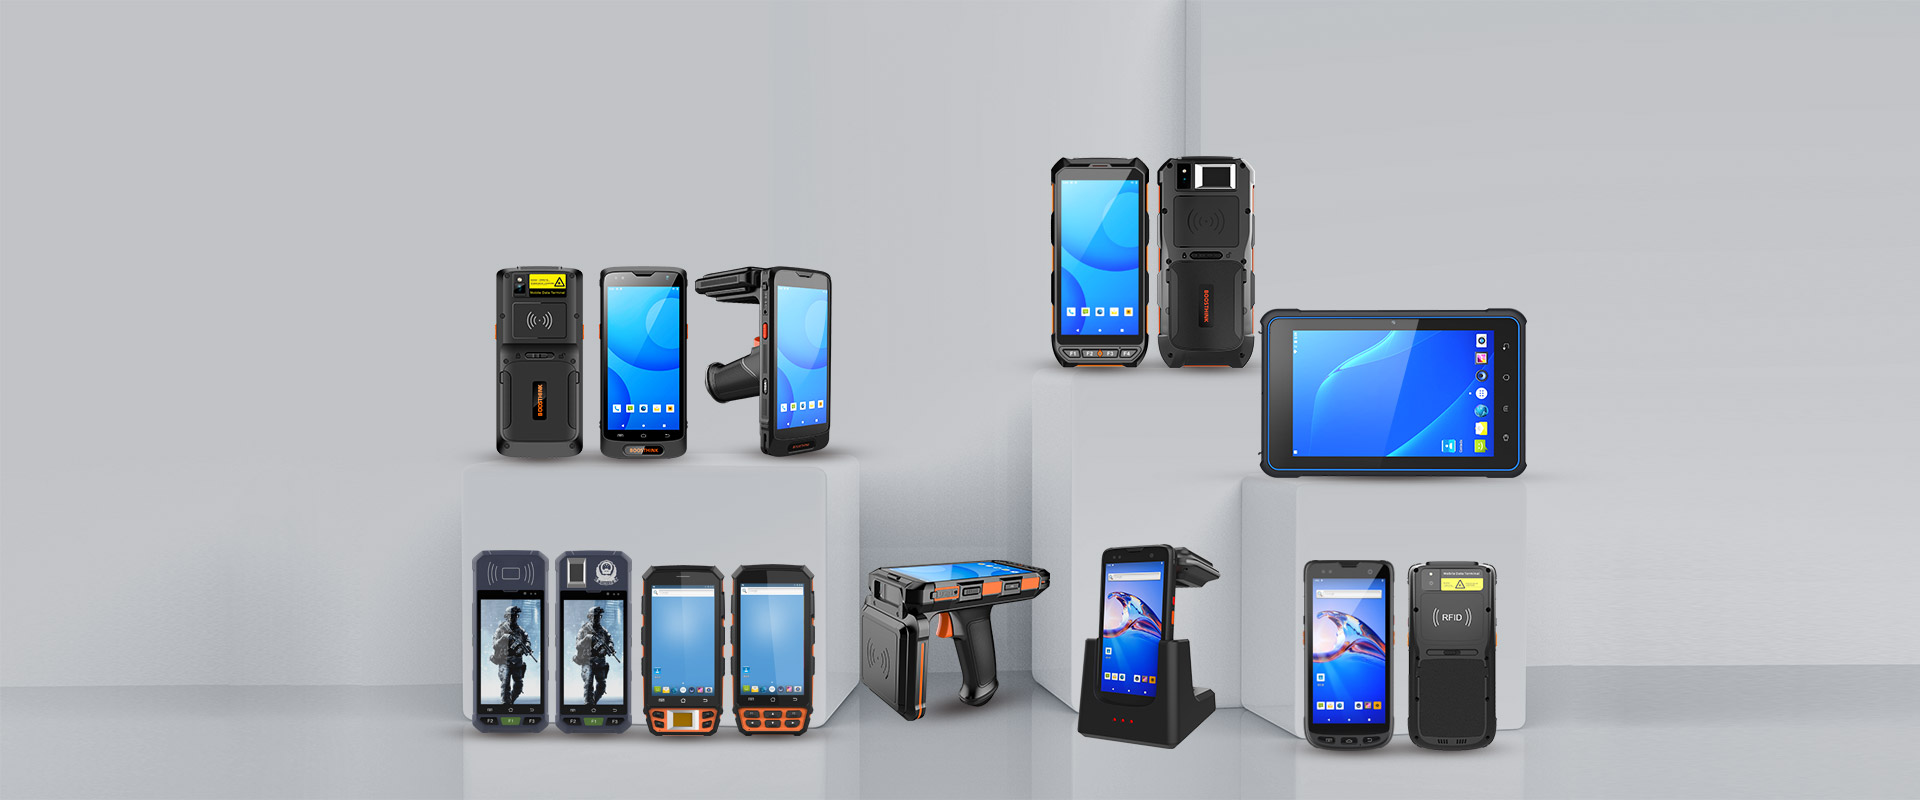 Shenzhen Handheld-Wireless Technology Co., Ltd., विविध ऍप्लिकेशन्स आणि वापरांसाठी विविध andoid RFID किंवा बारकोड रीडर ऑफर करतात.